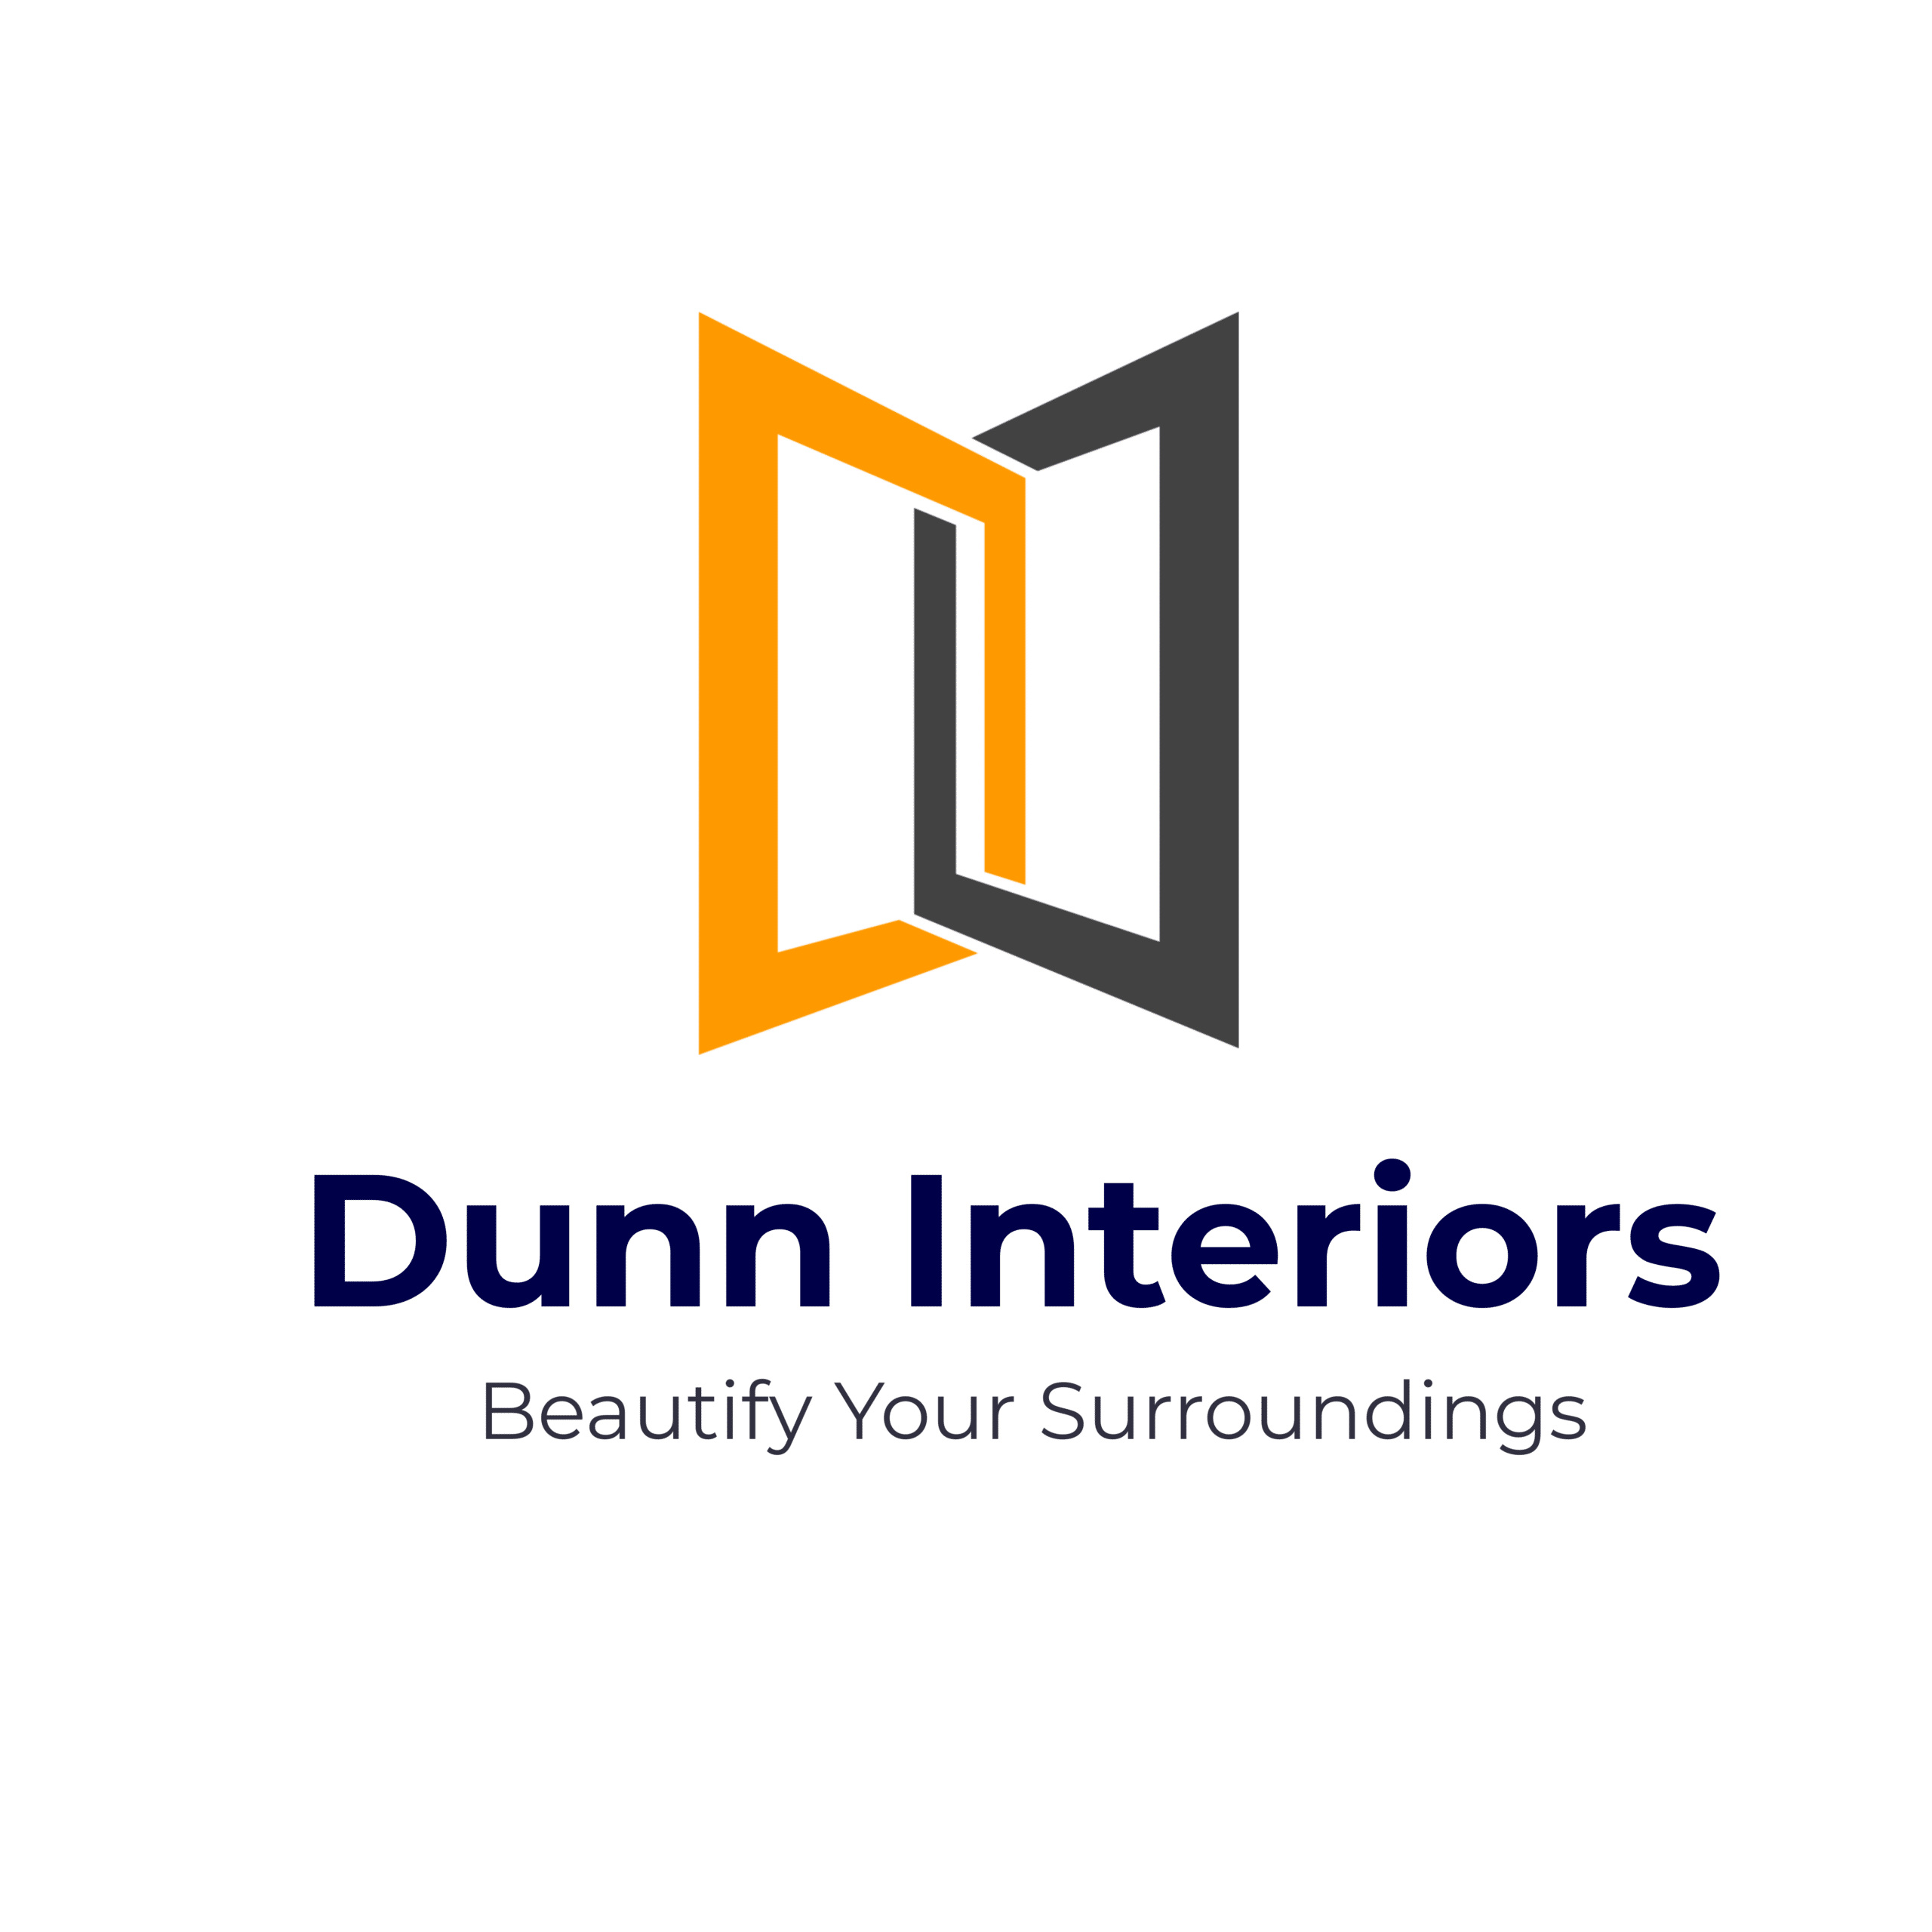 Dunn Interiors